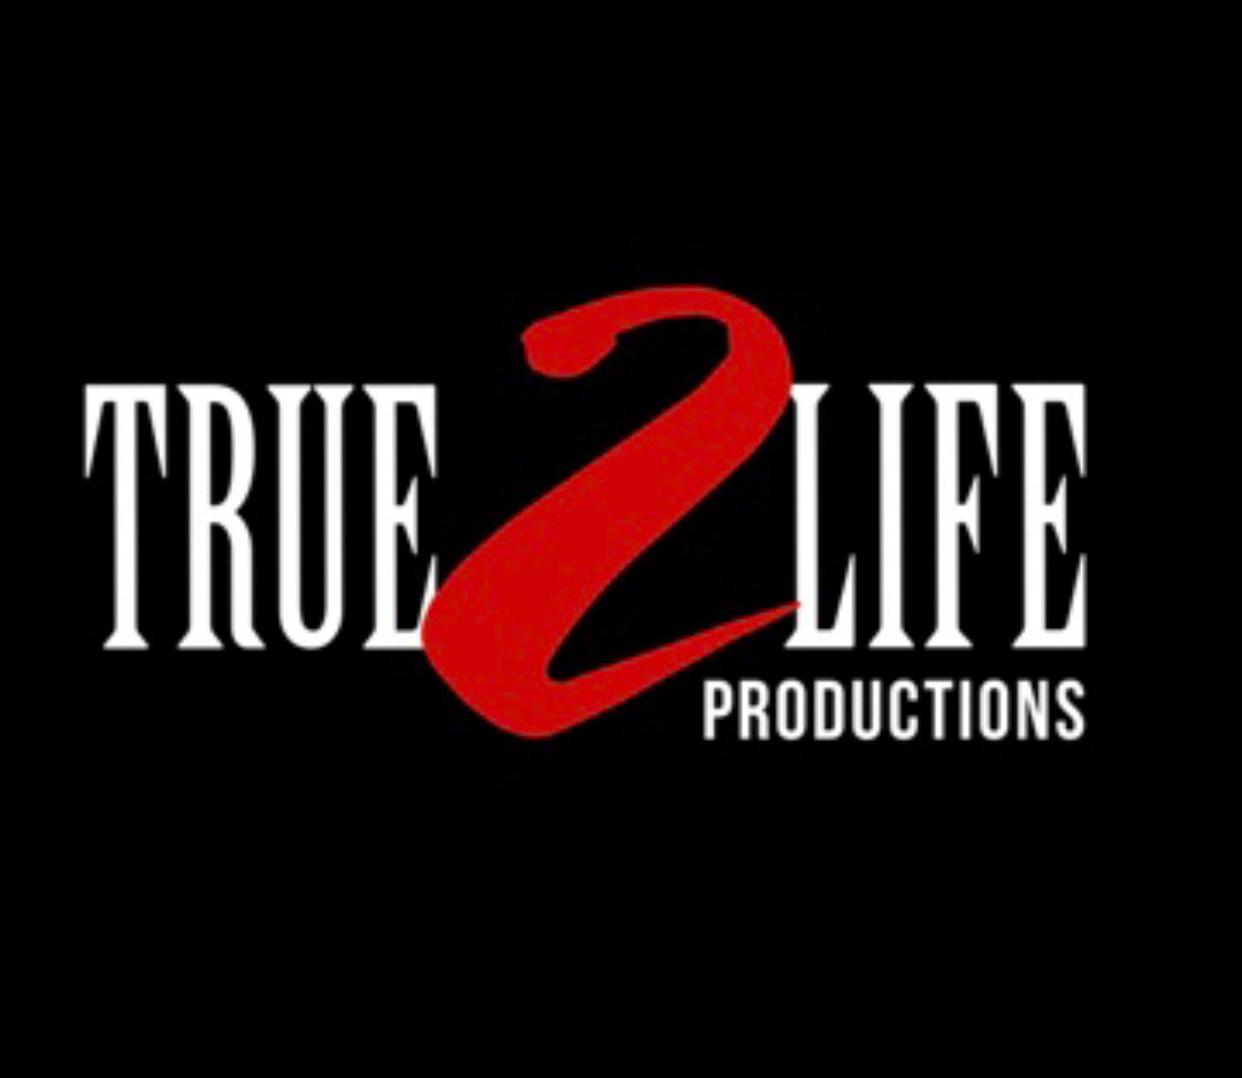 True 2 Life Publications Logo